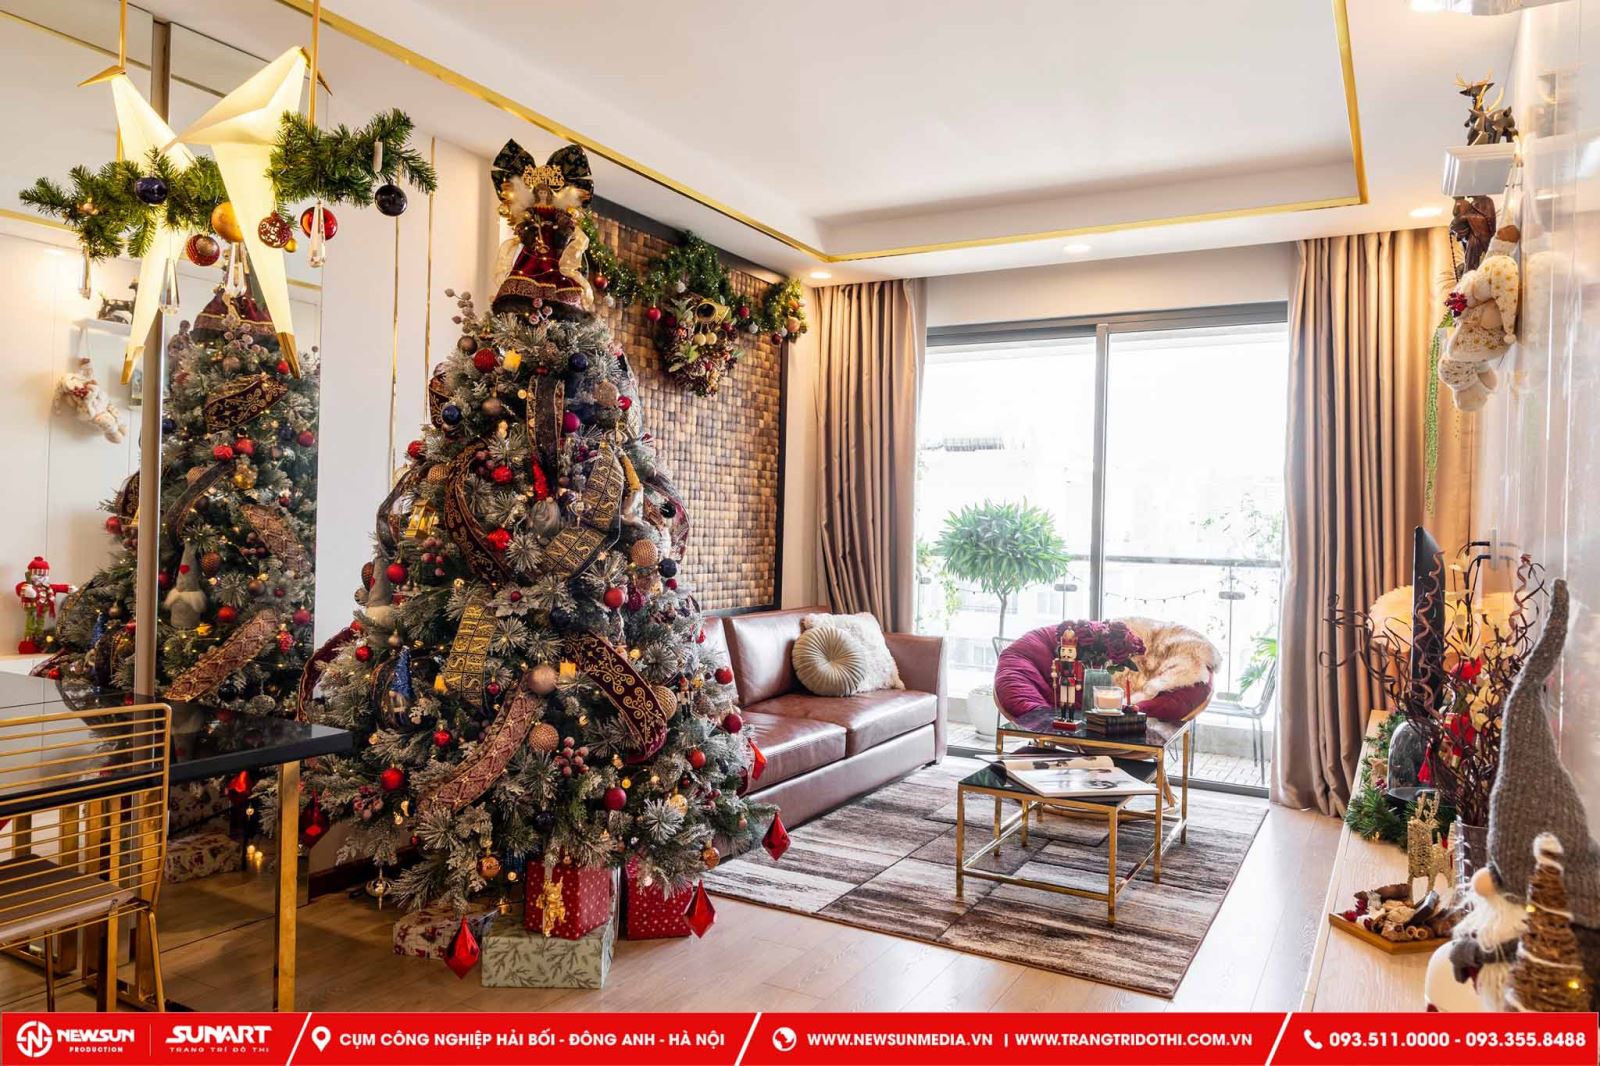 trang trí noel tại nhà vào ngày lễ giáng sinh tạo nên không gian ấm áp và vui trong ngày lễ